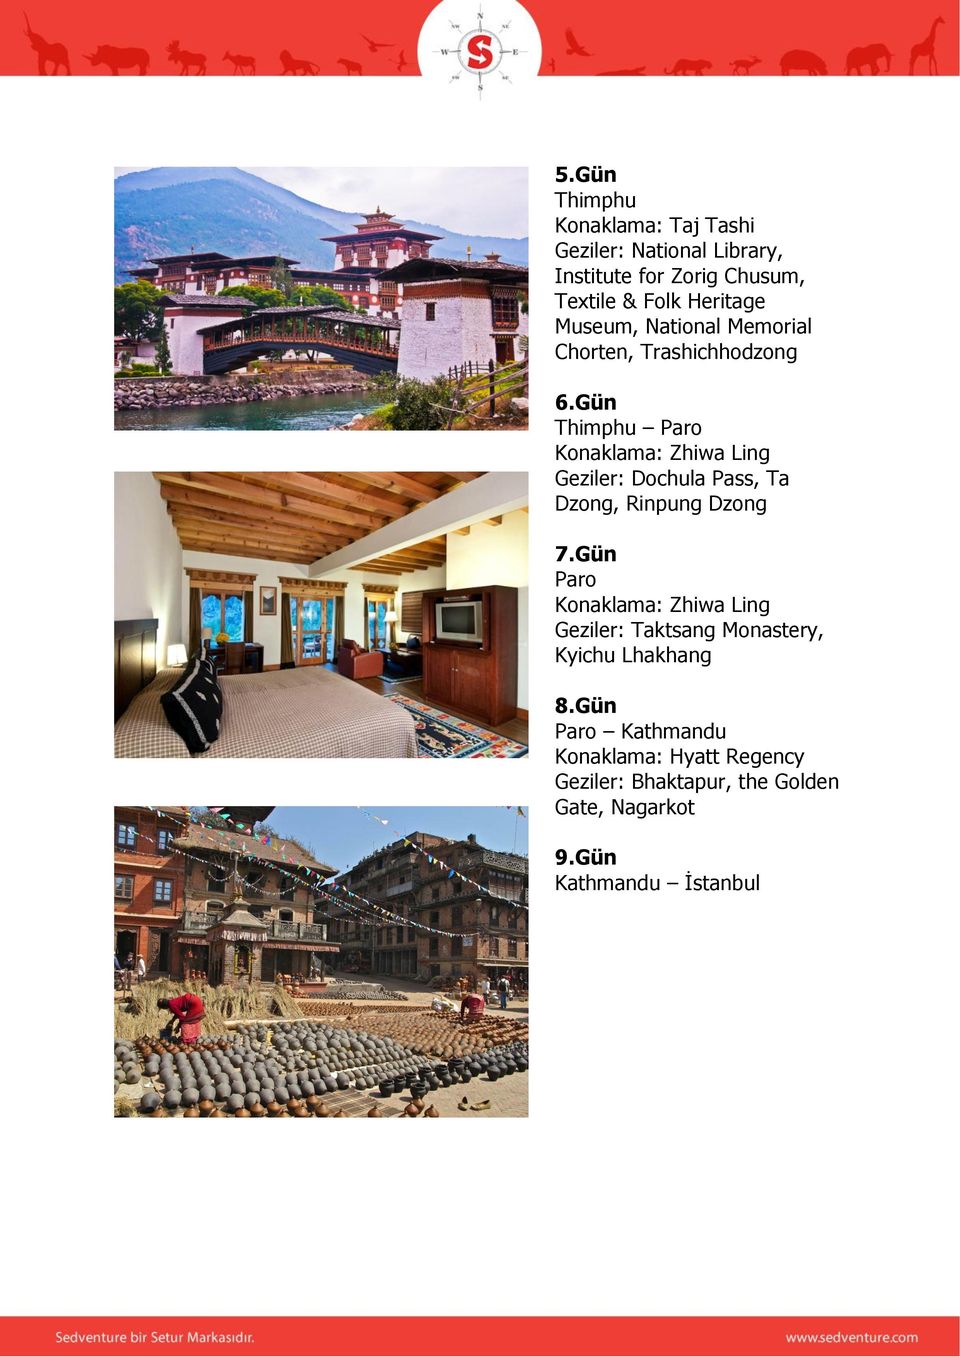 Gün Thimphu Paro Konaklama: Zhiwa Ling Geziler: Dochula Pass, Ta Dzong, Rinpung Dzong 7.